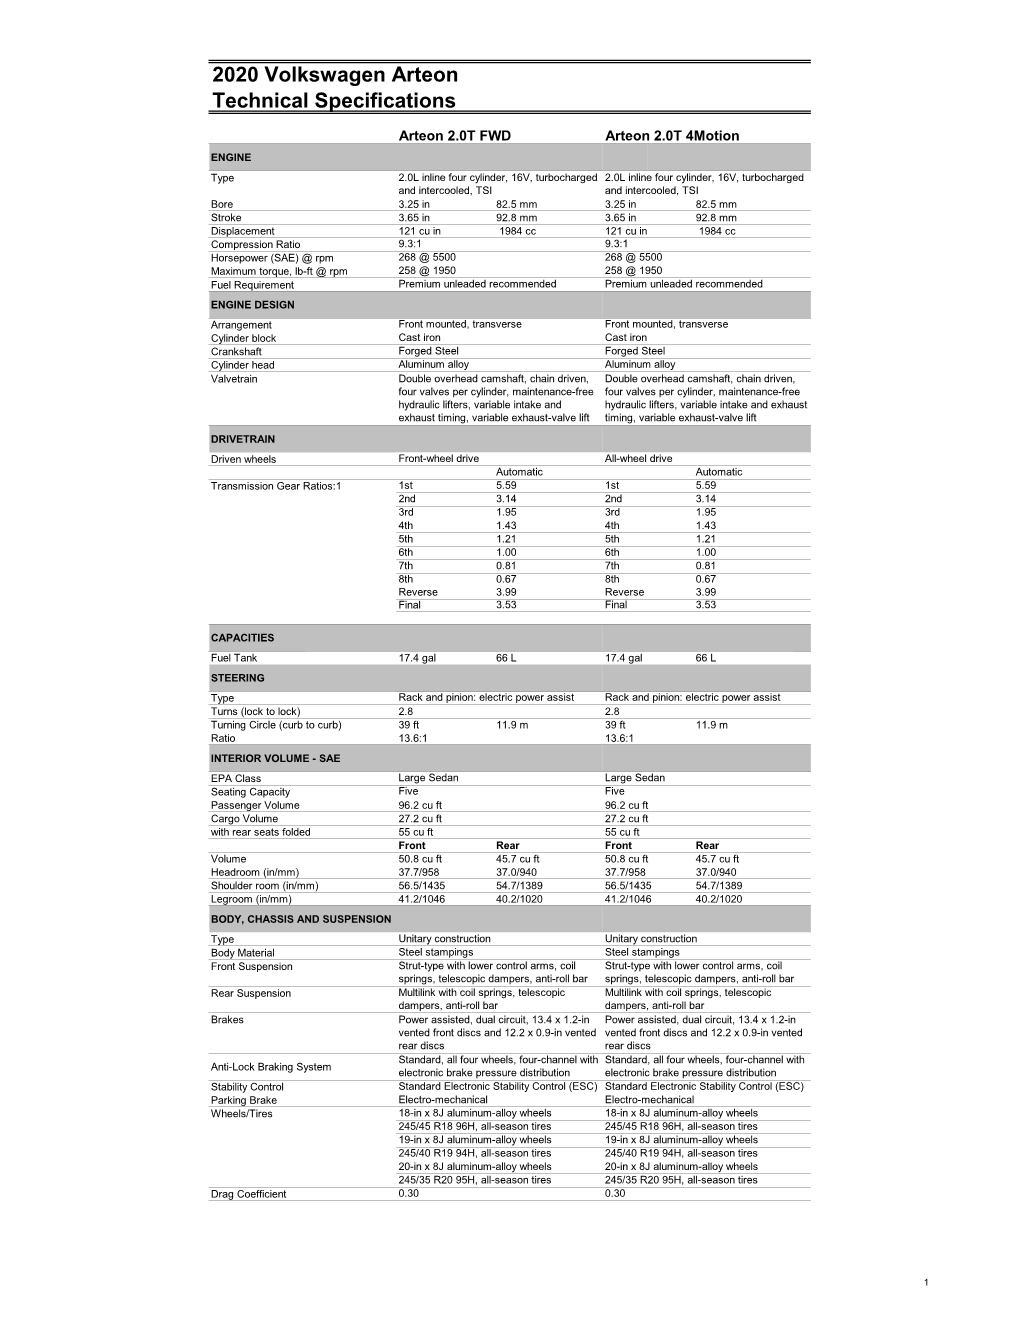 2020 Volkswagen Arteon Technical Specifications